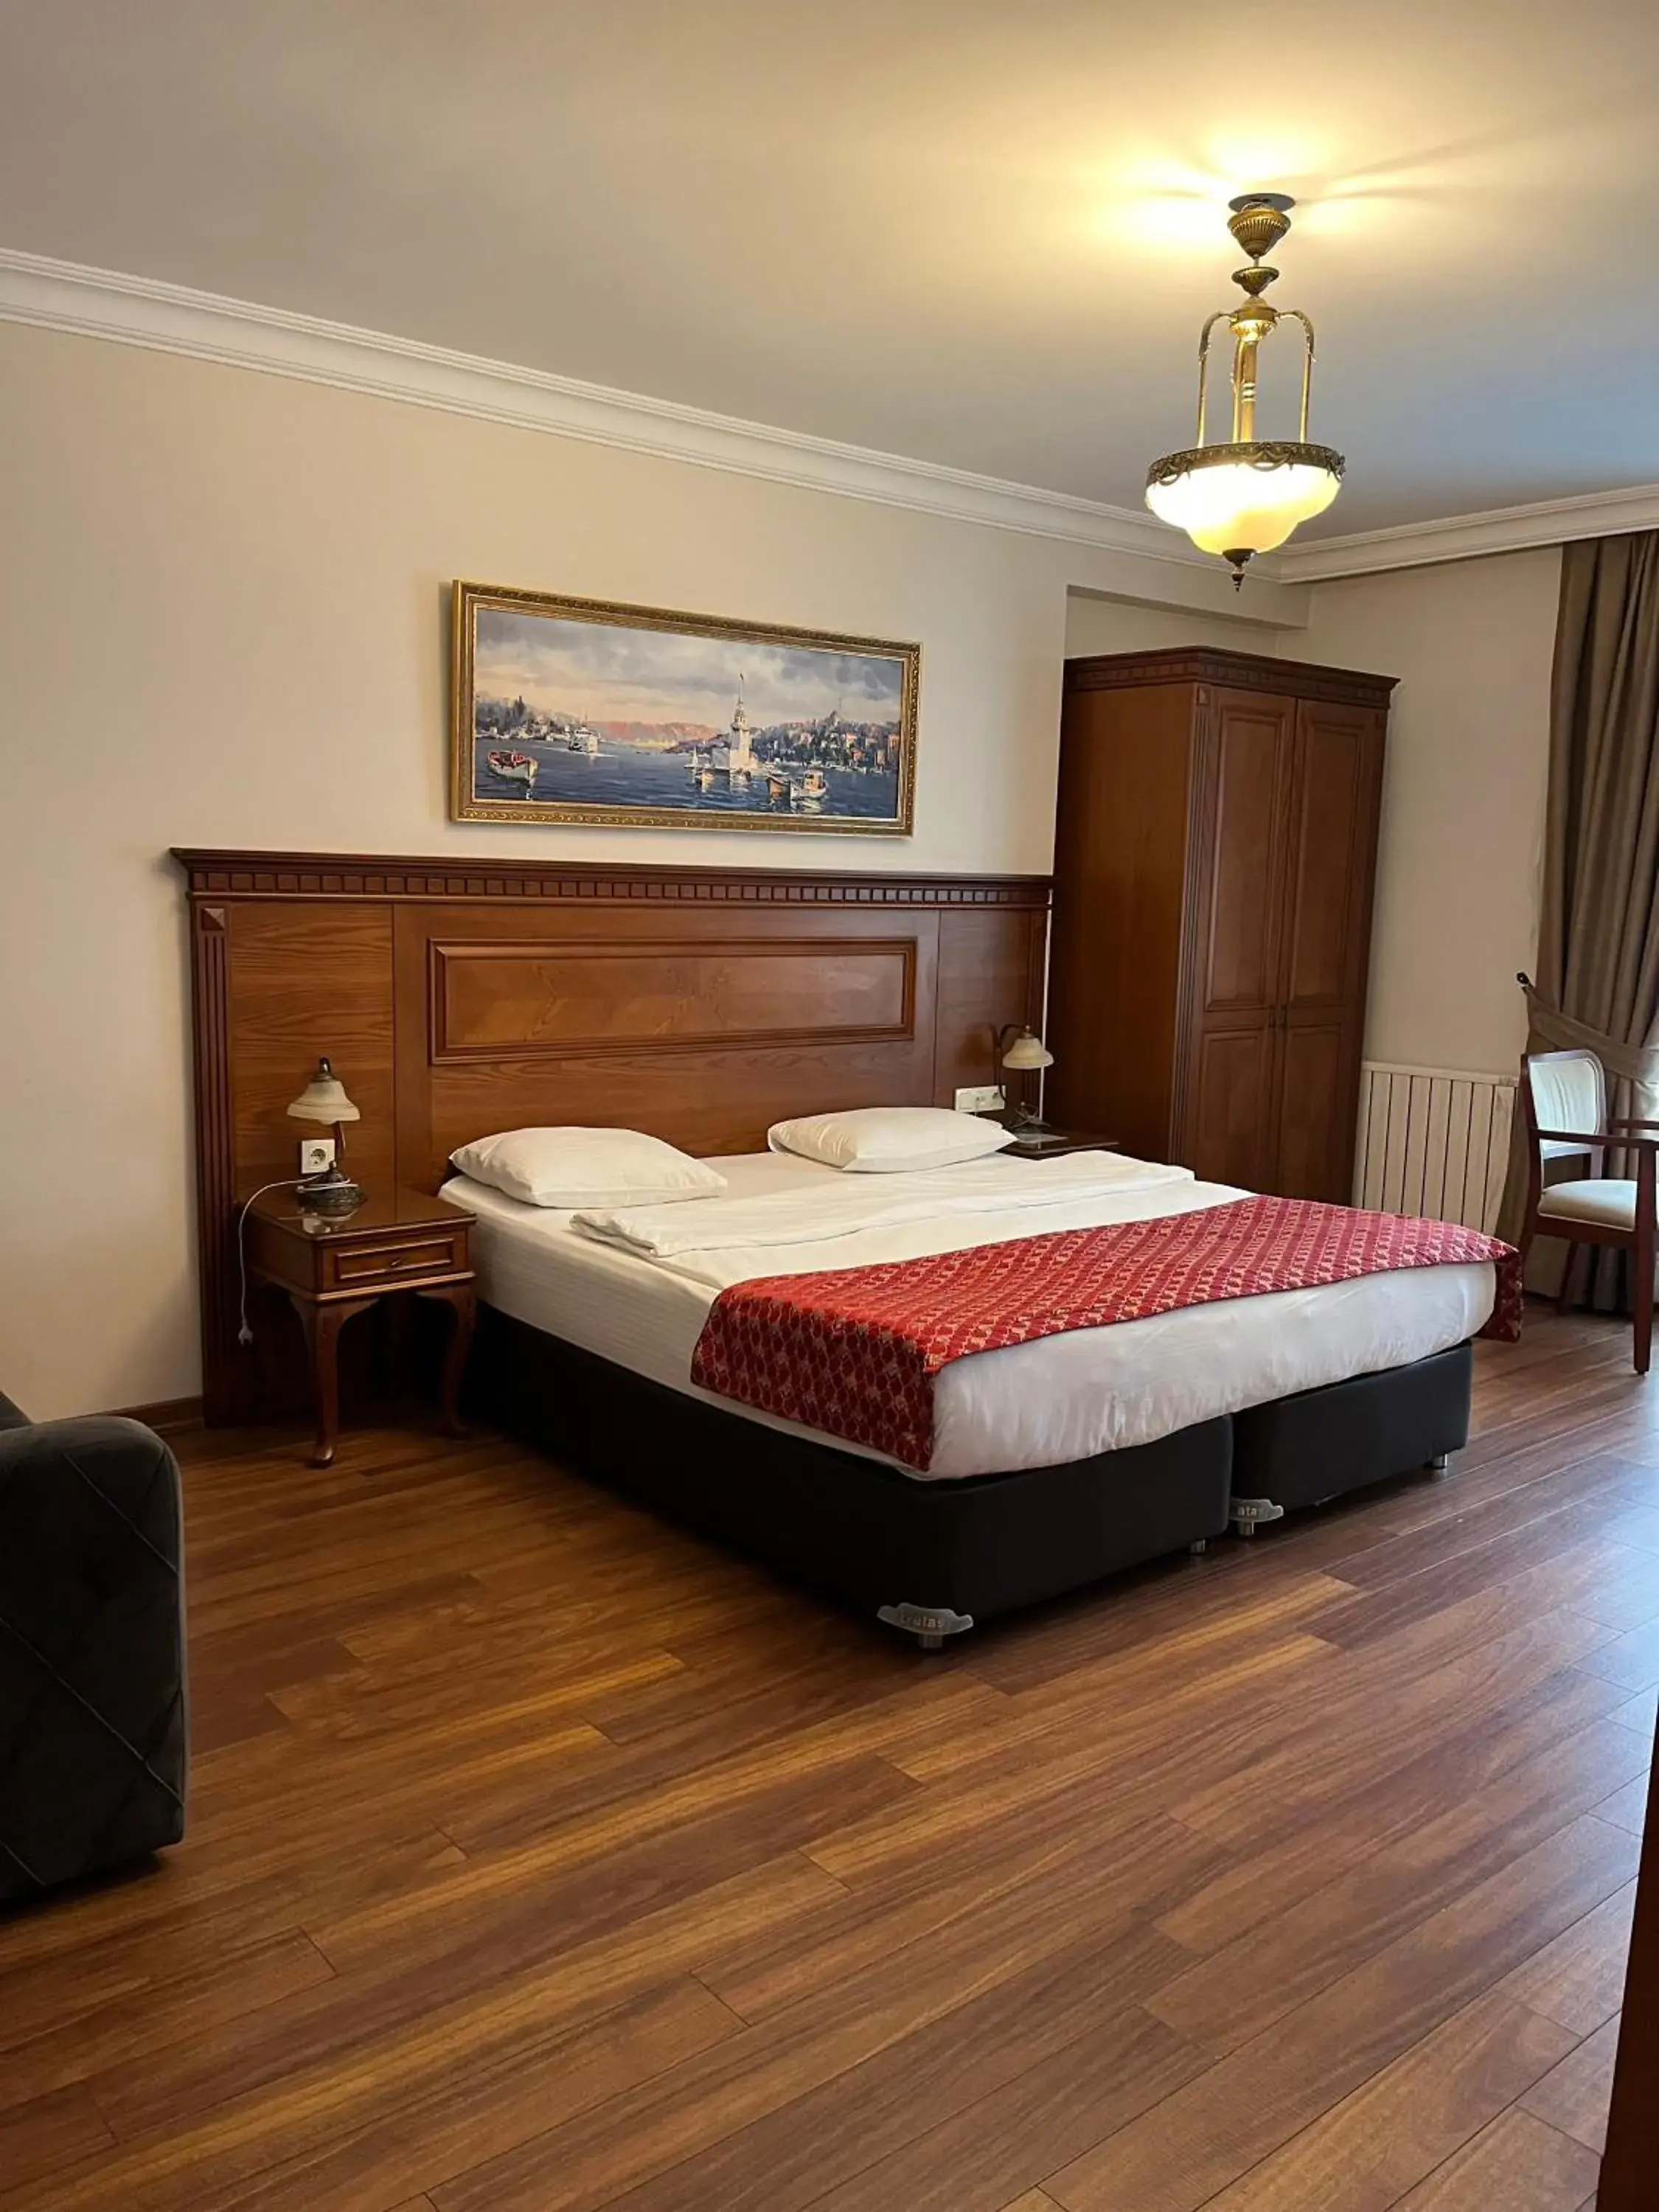 Bed in Blisstanbul Hotel